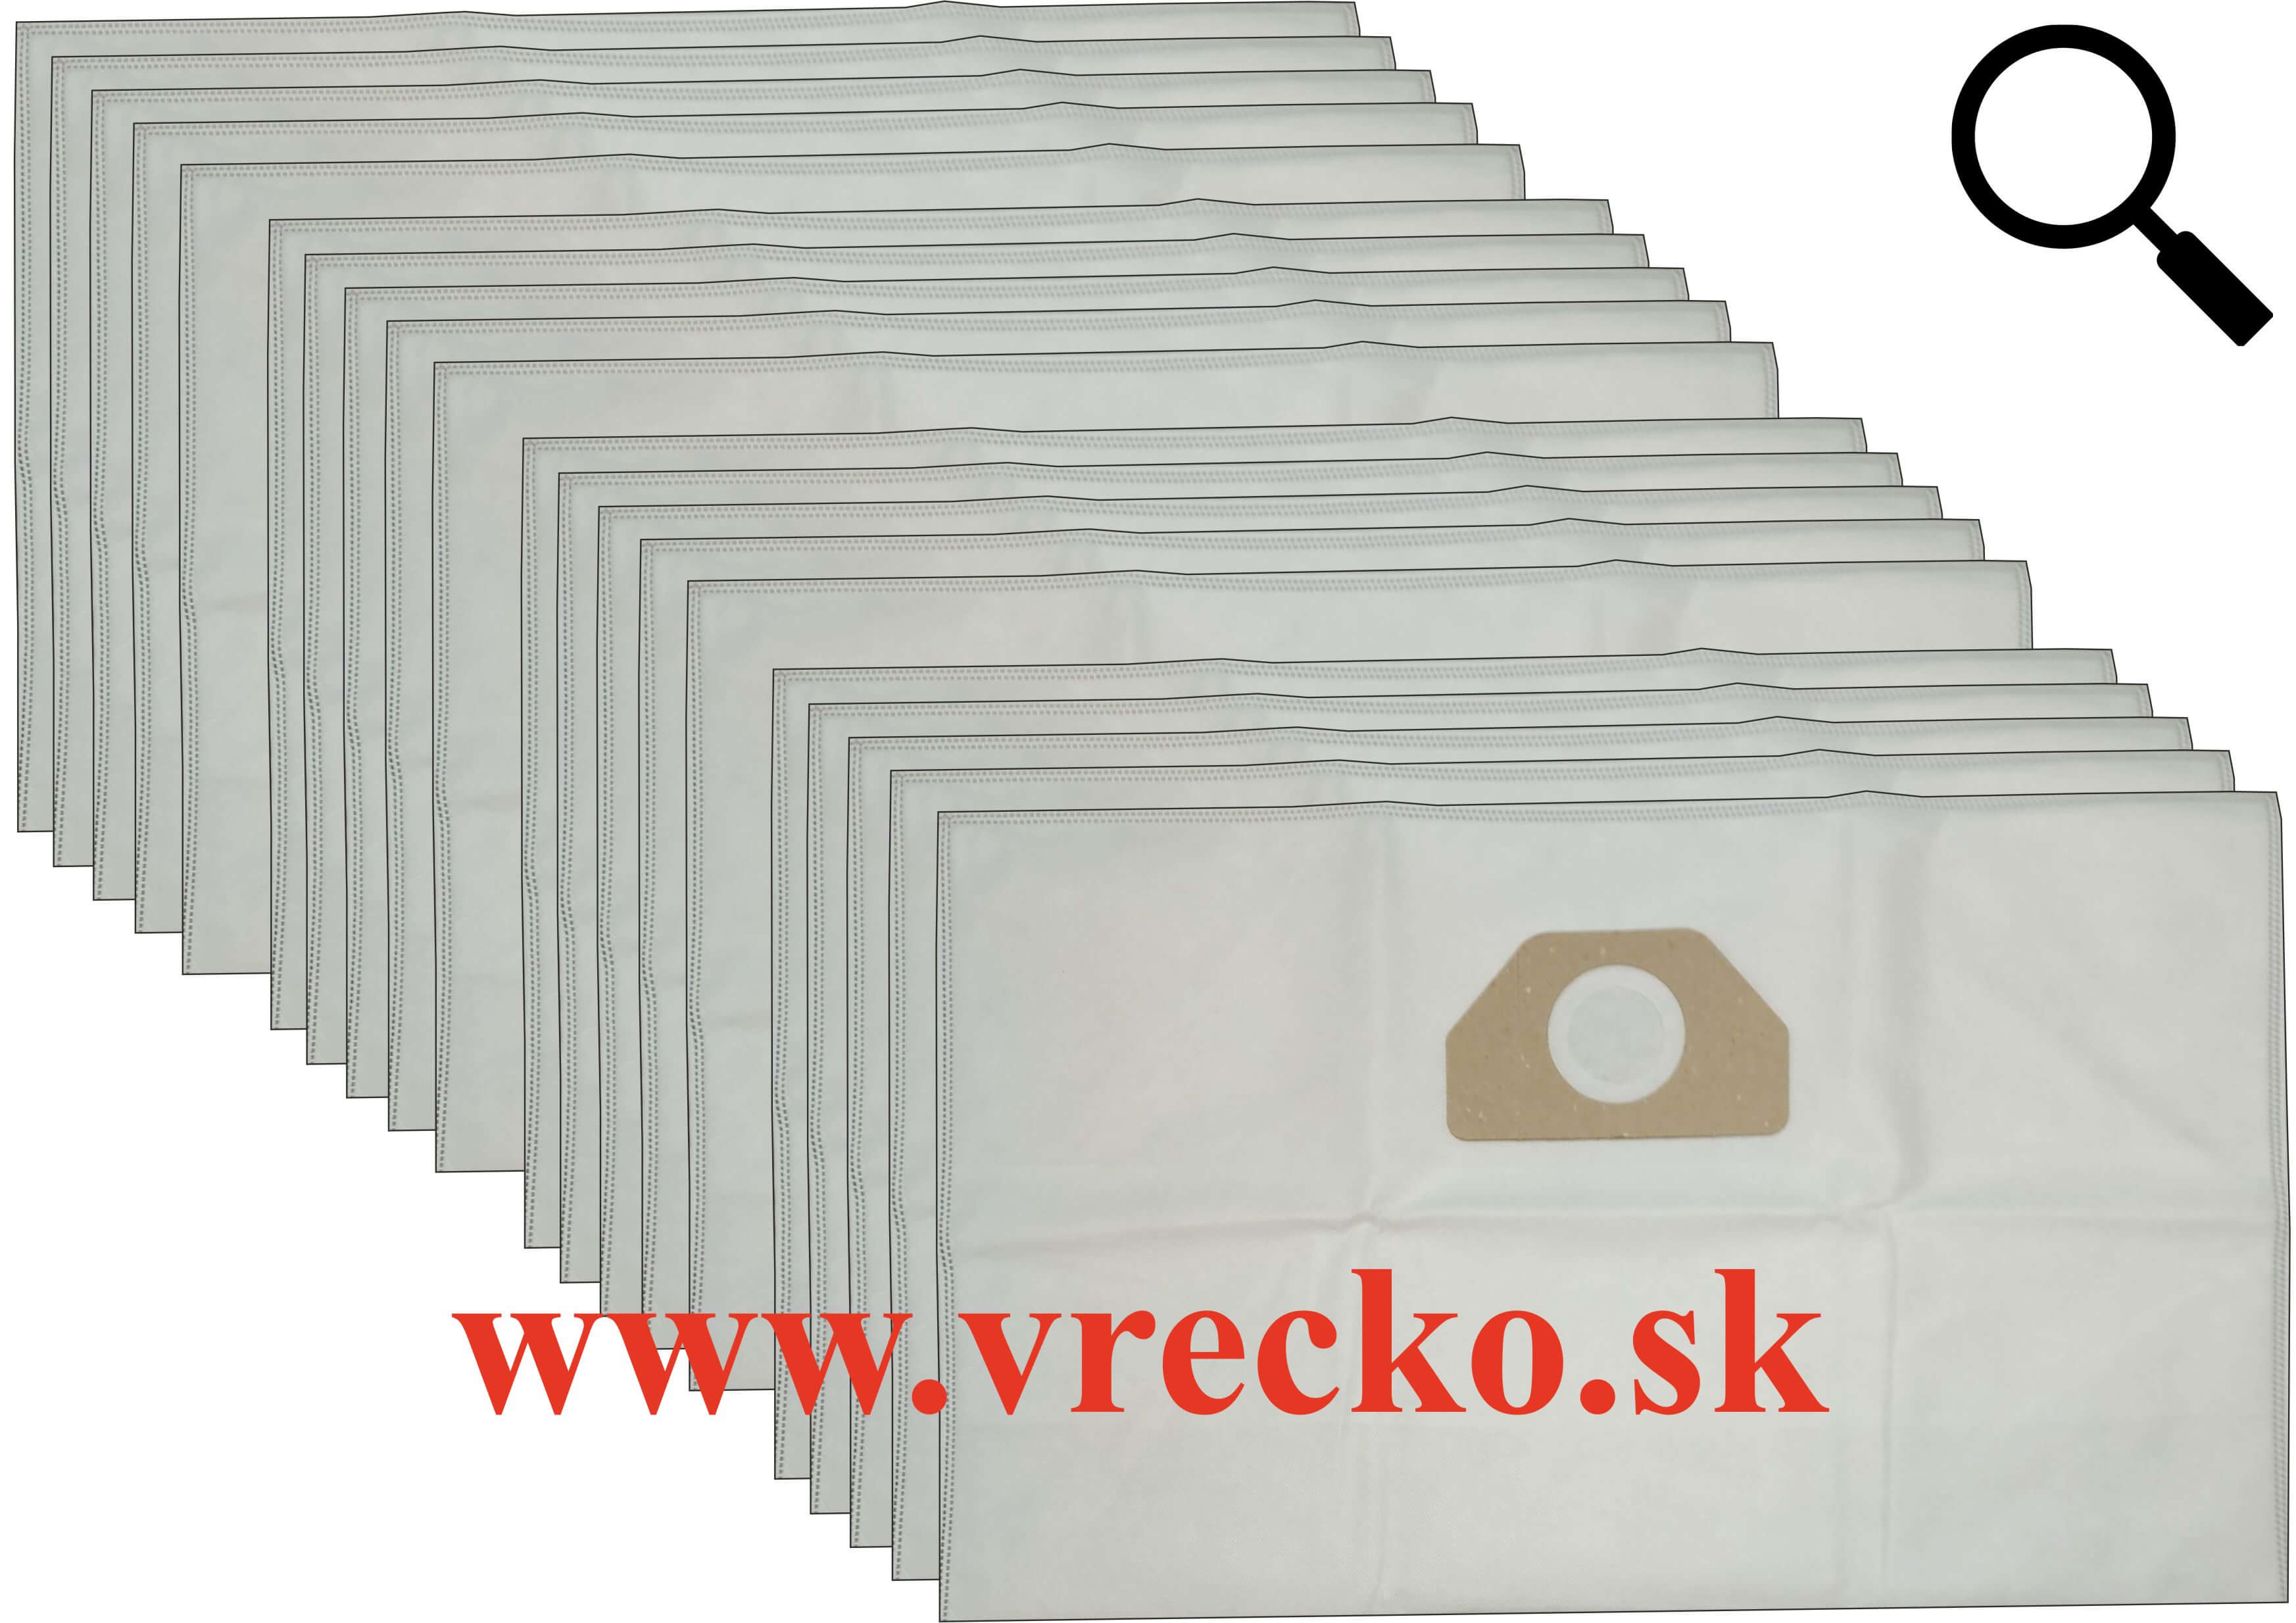 Kärcher 2150 - Textilné vrecká do vysávača XXL vo zvýhodnenom balení s dopravou zdarma (20ks)